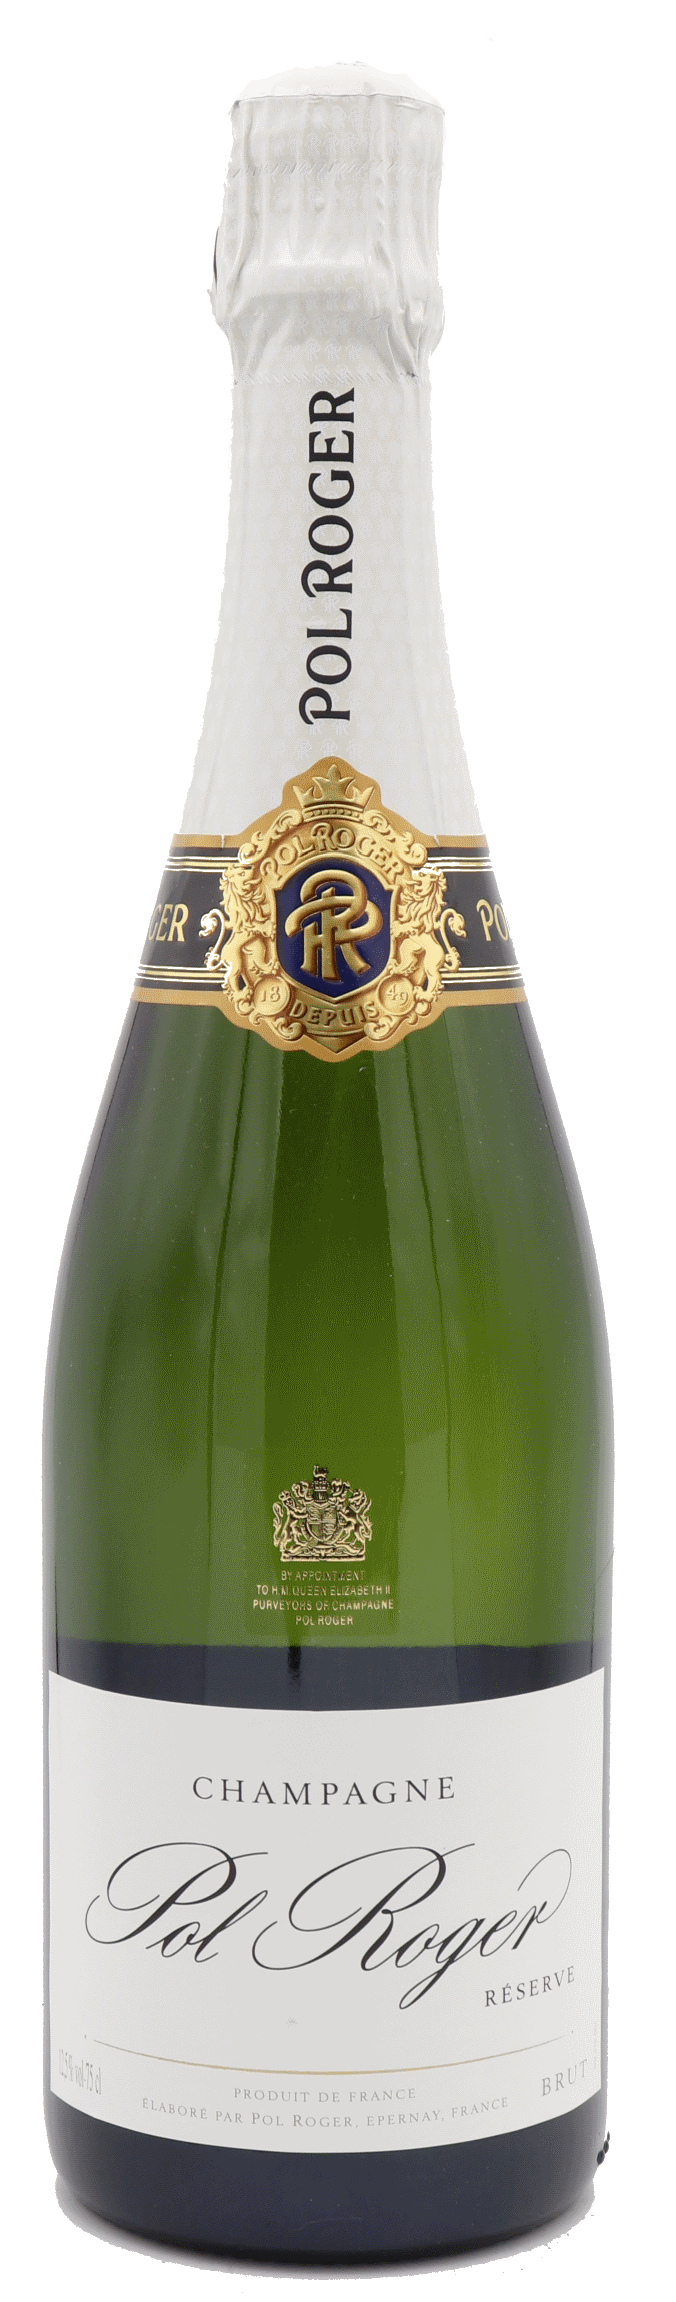 Champagne Pol Roger Brut Reserve